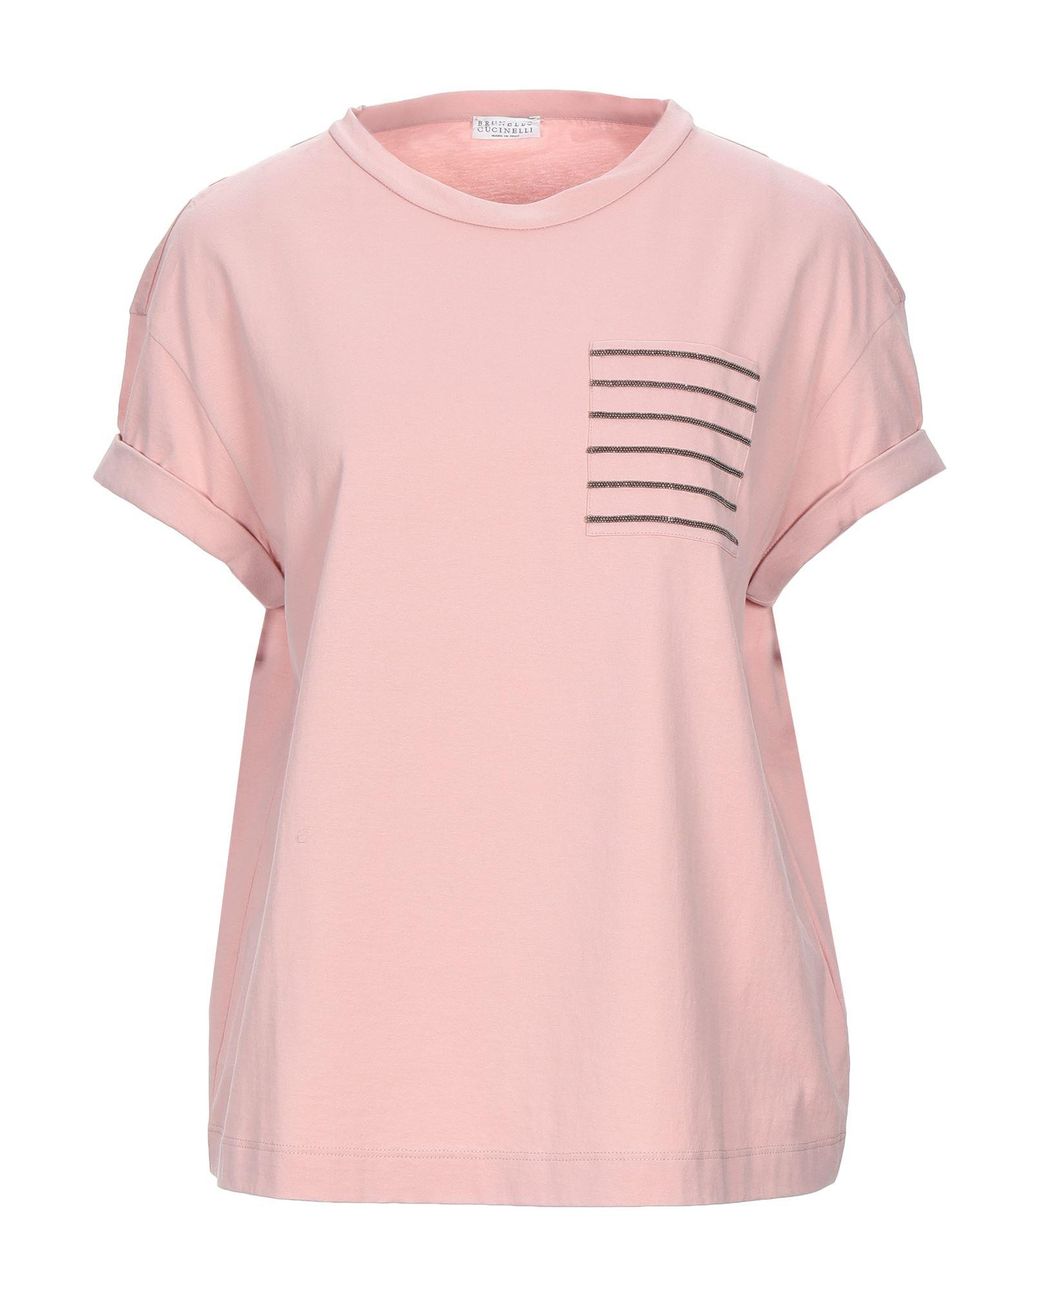 Brunello Cucinelli Cotton T-shirt in Pink - Lyst